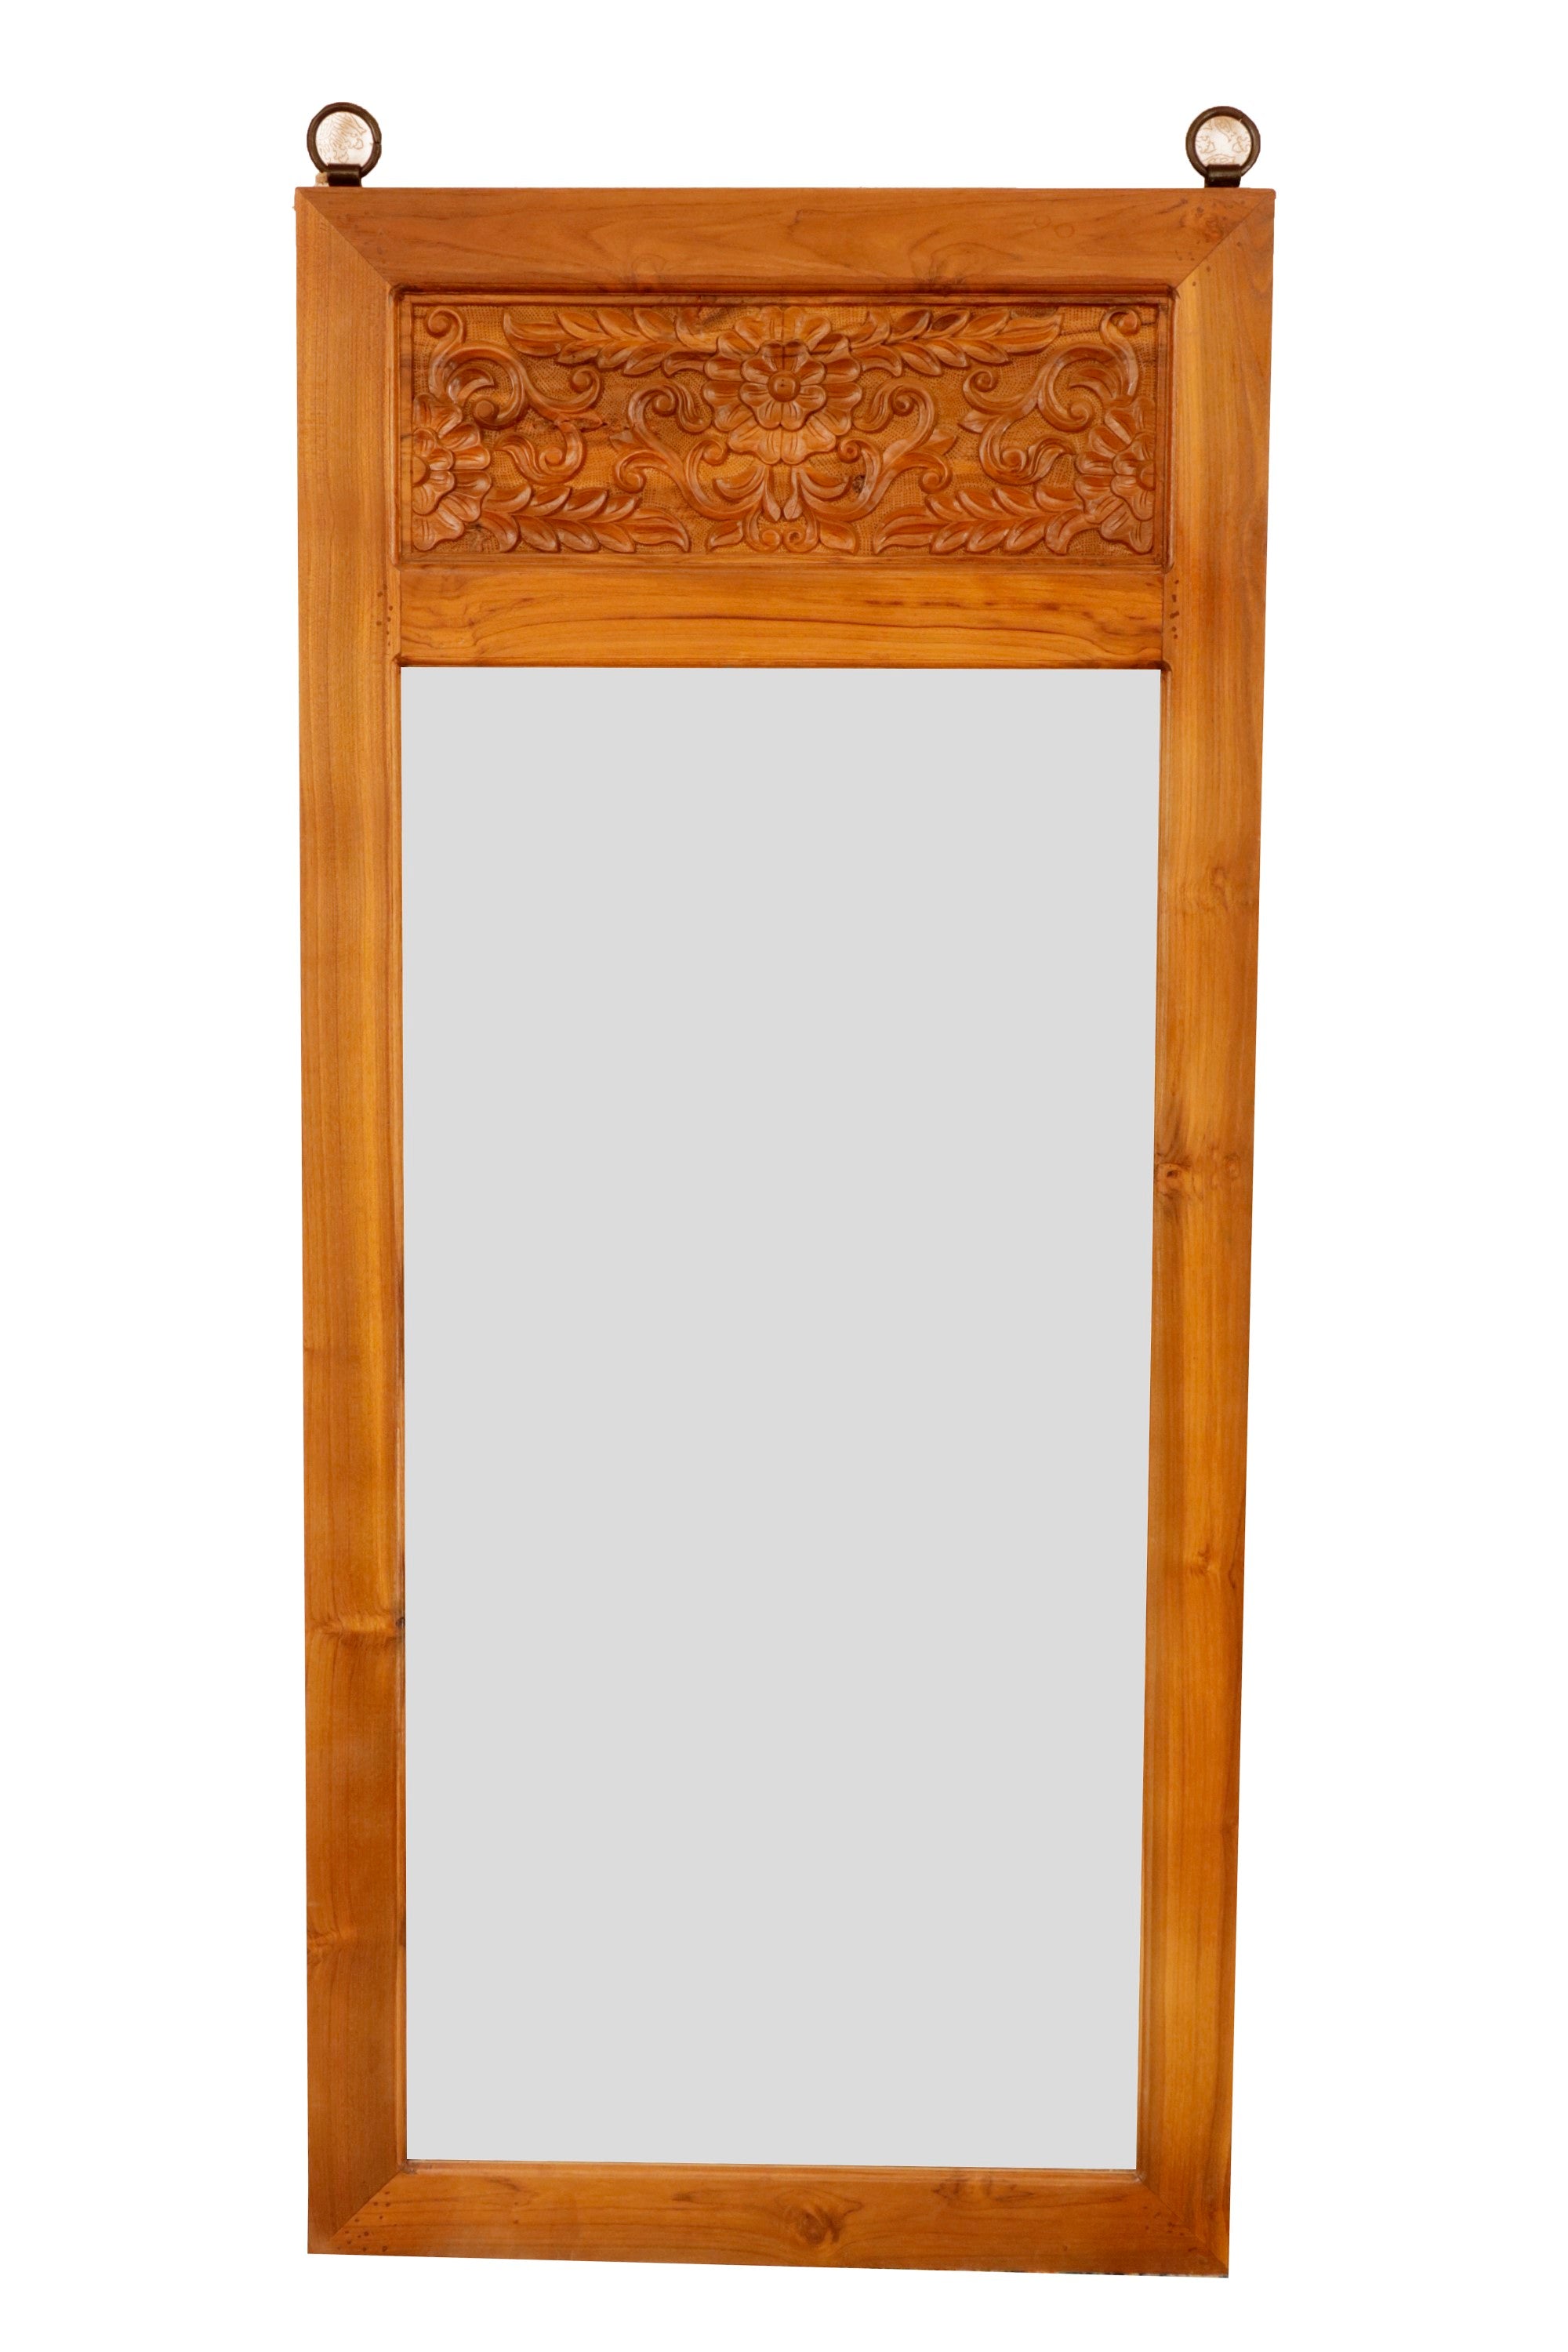 Solid Teak Royal Carved Mirror Mirror